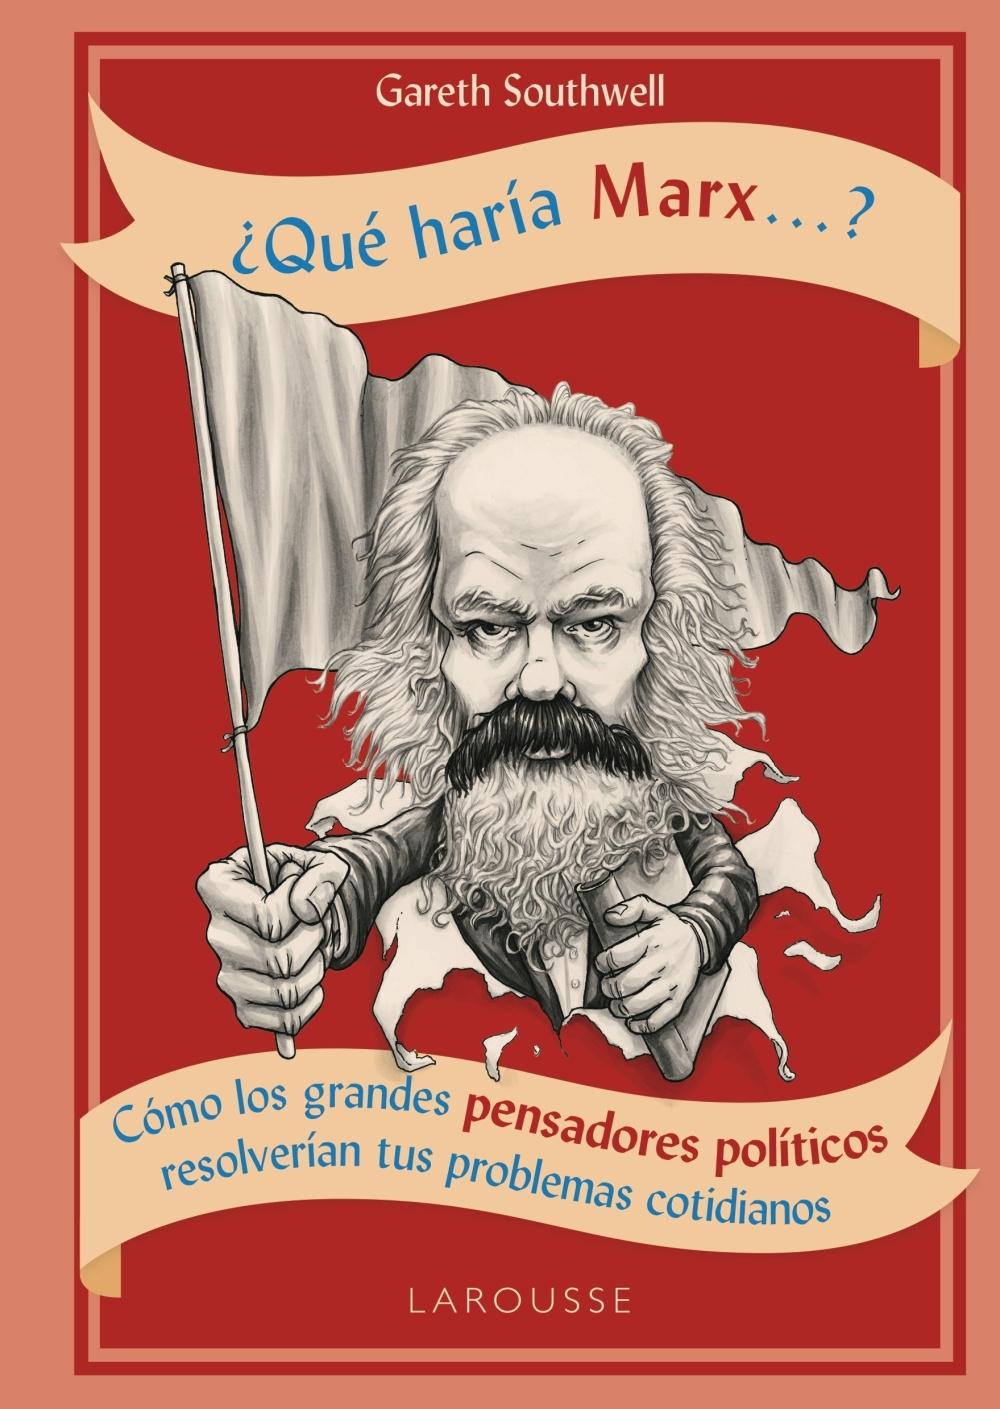 ¿Qué haría Marx...? "Cómo los grandes pensadores políticos resolverían tus problemas cotidianos". 